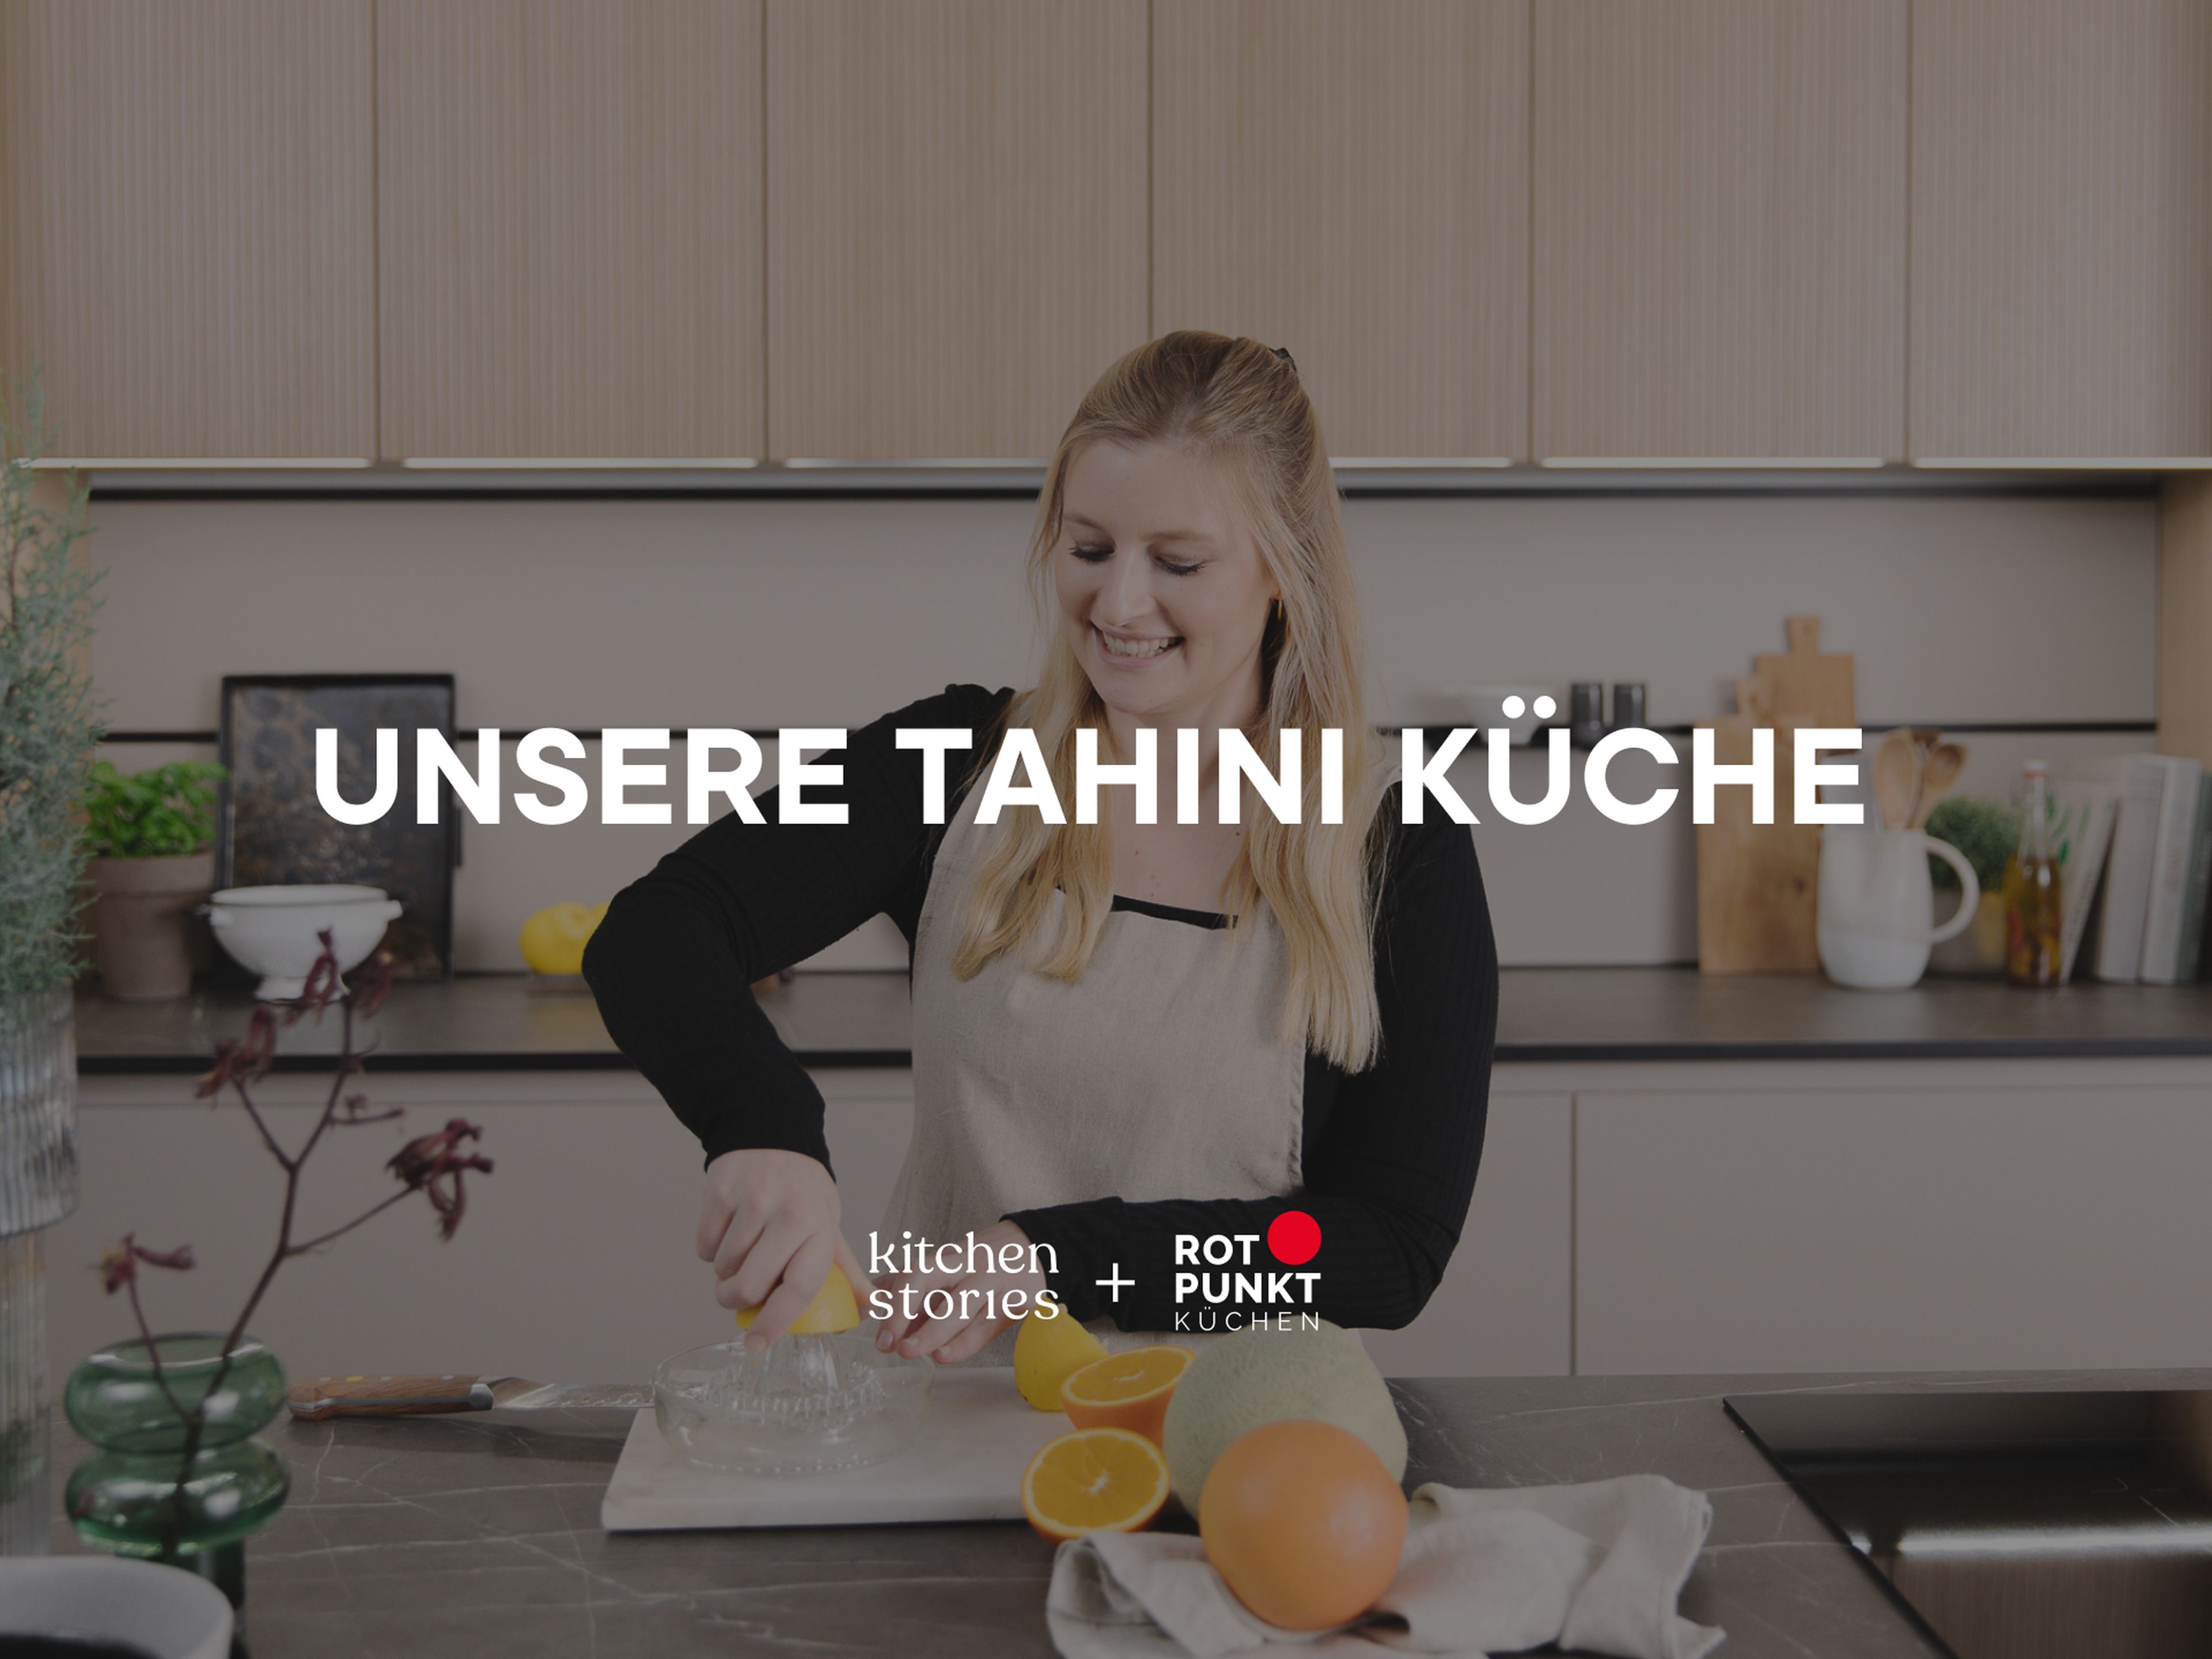 Tahini Kitchen - Der Clean Style für deine Küche